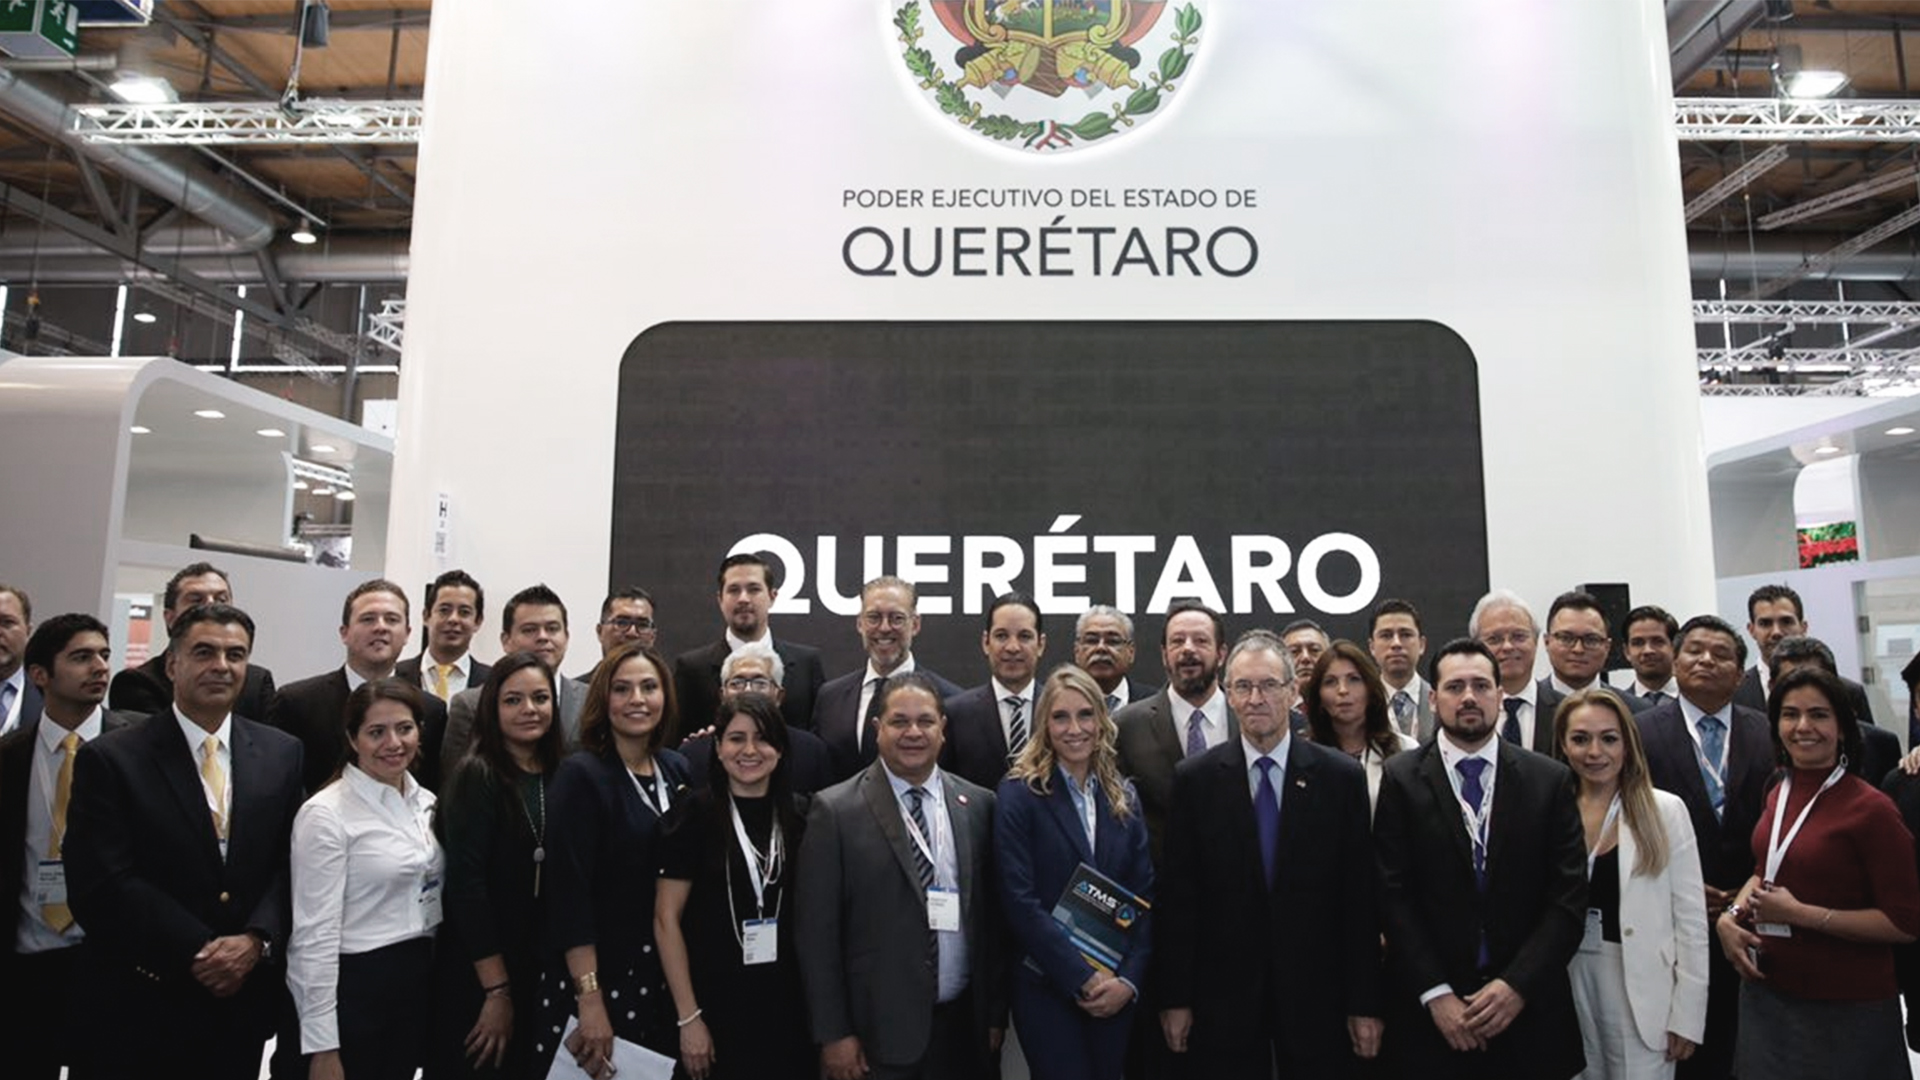 El Parque Tecnológico del Tec de Monterrey en Querétaro tuvo la oportunidad de participar en la Feria Internacional de Tecnología: Hannover Messe en Alemania